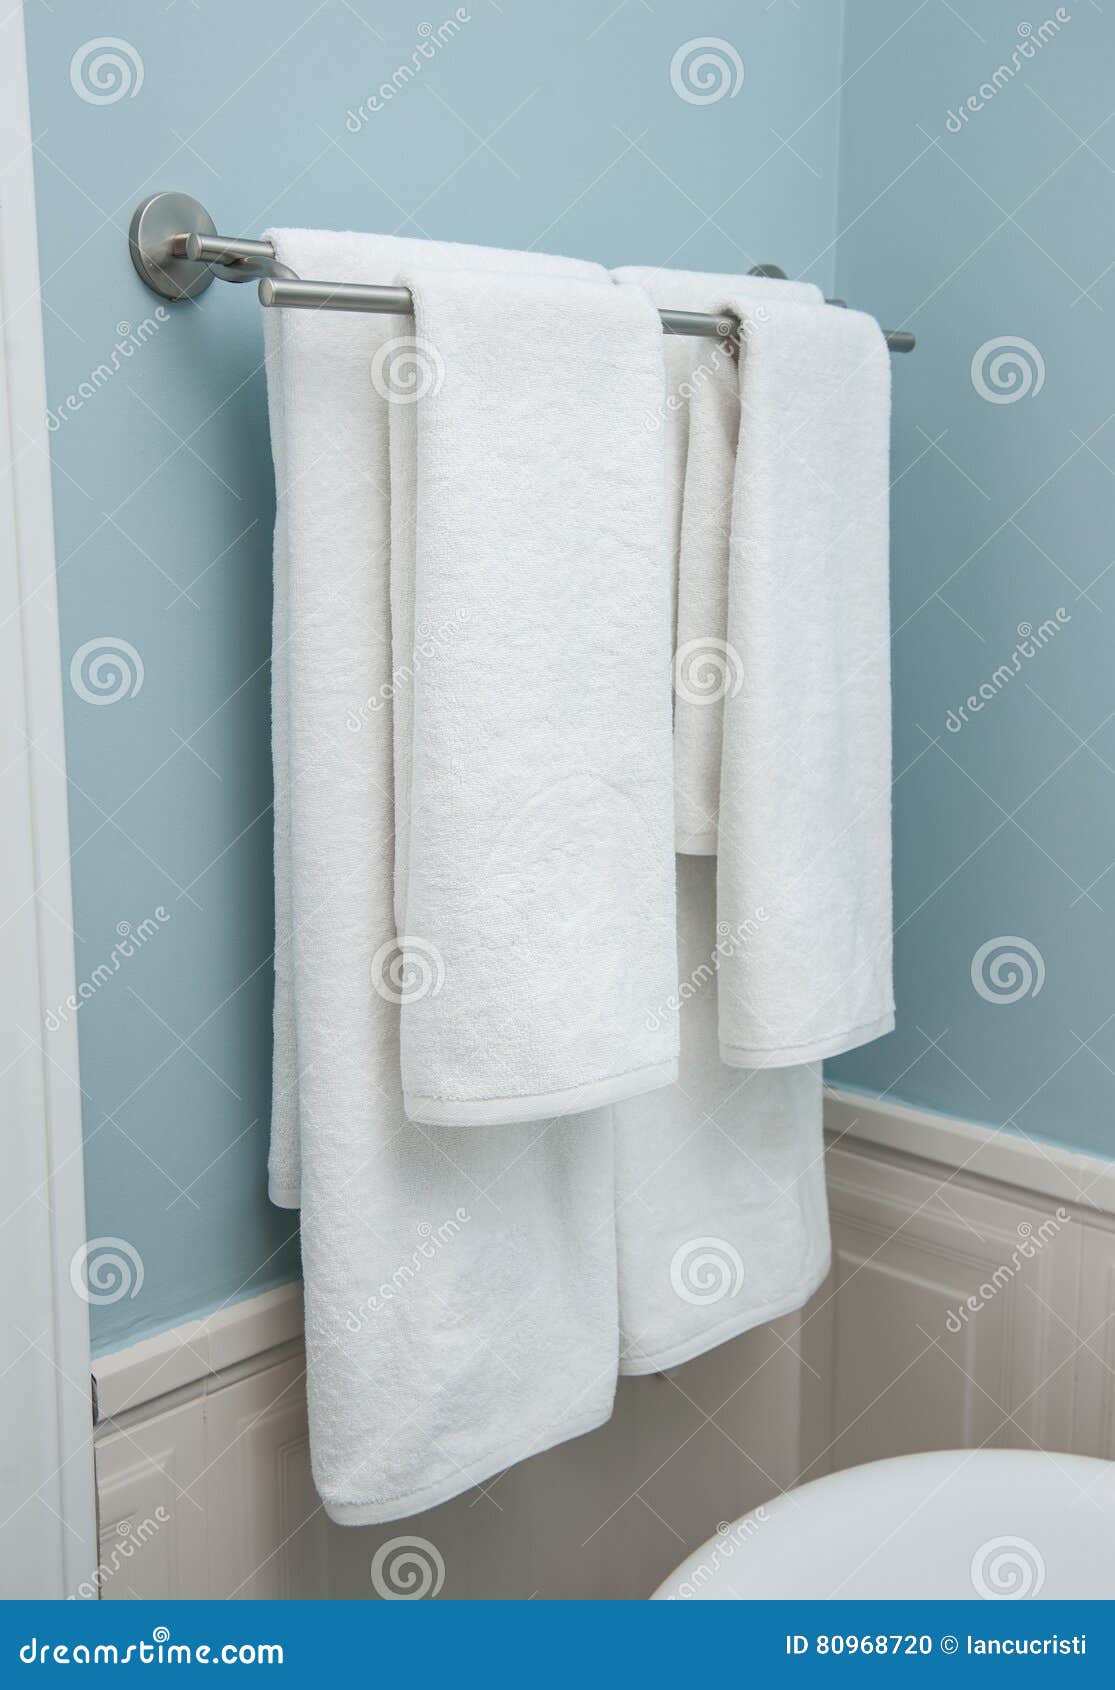 Полотенце весит. Полотенце висит в ванной. Полотенца весят в ванной. Вешалка для полотенец белая. Белое полотенце на полотенцедержателе.